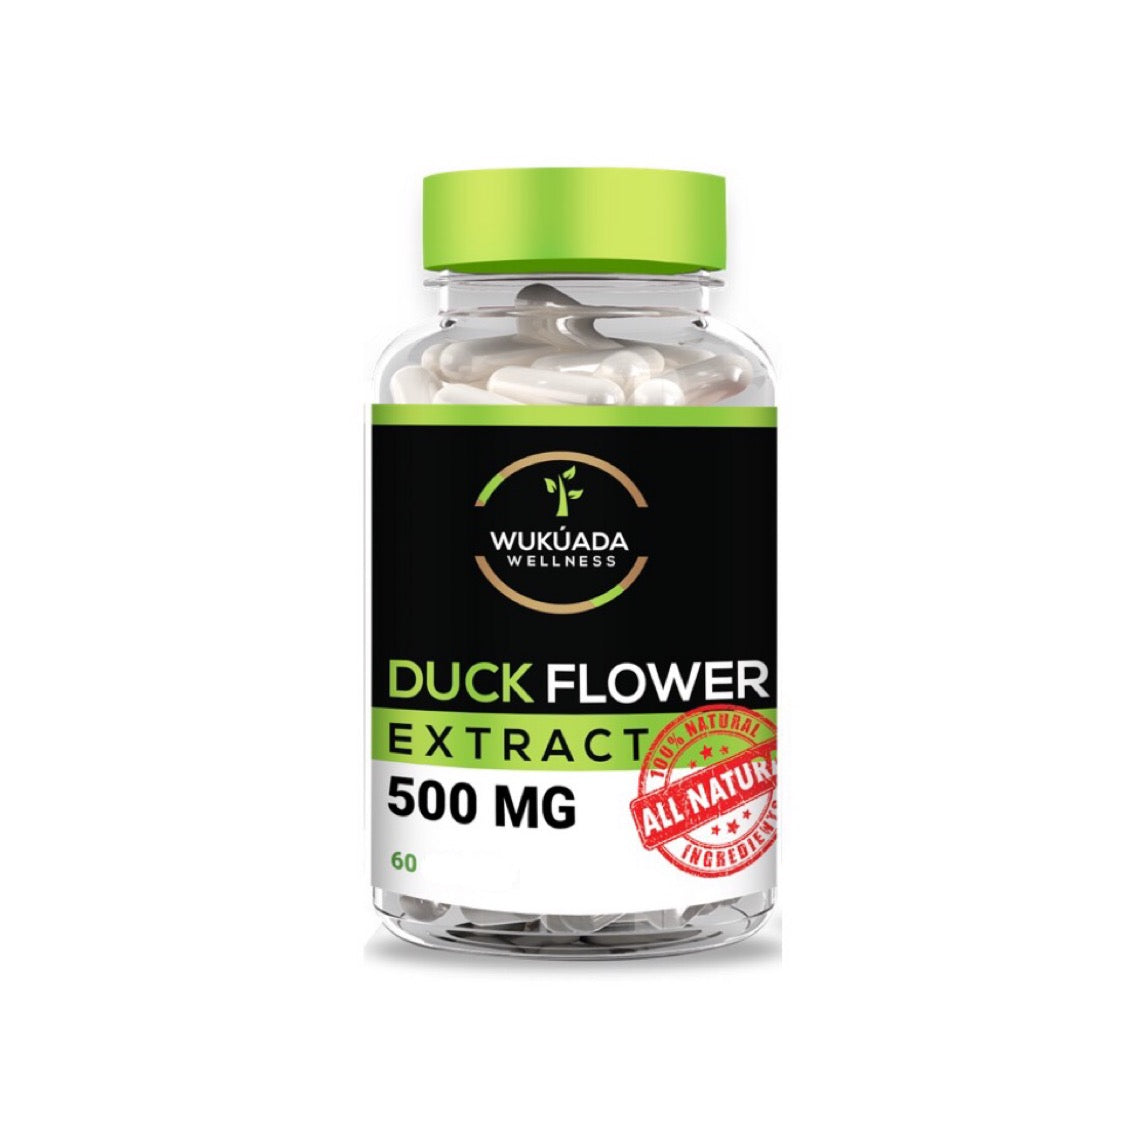 The Duck Flower Detox